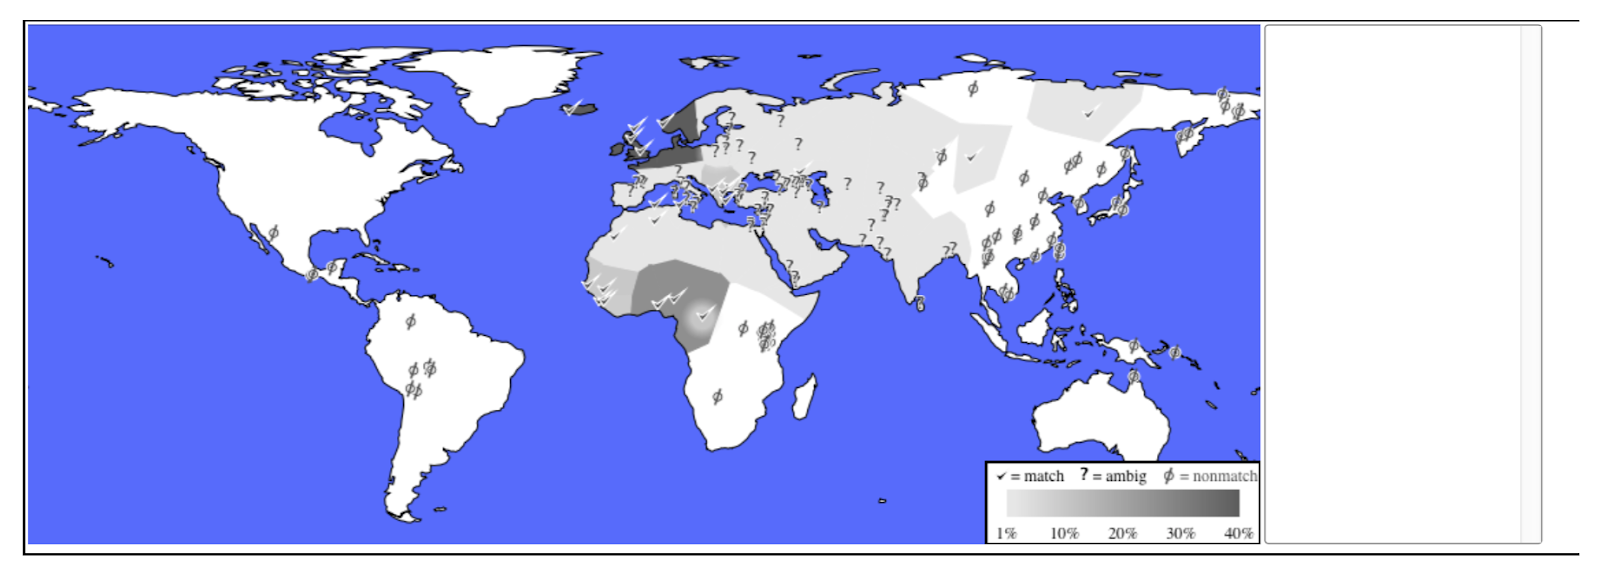 تين. 1 ج: النسبة المئوية للمجموعات العرقية المتطابقة في جميع أنحاء العالم.